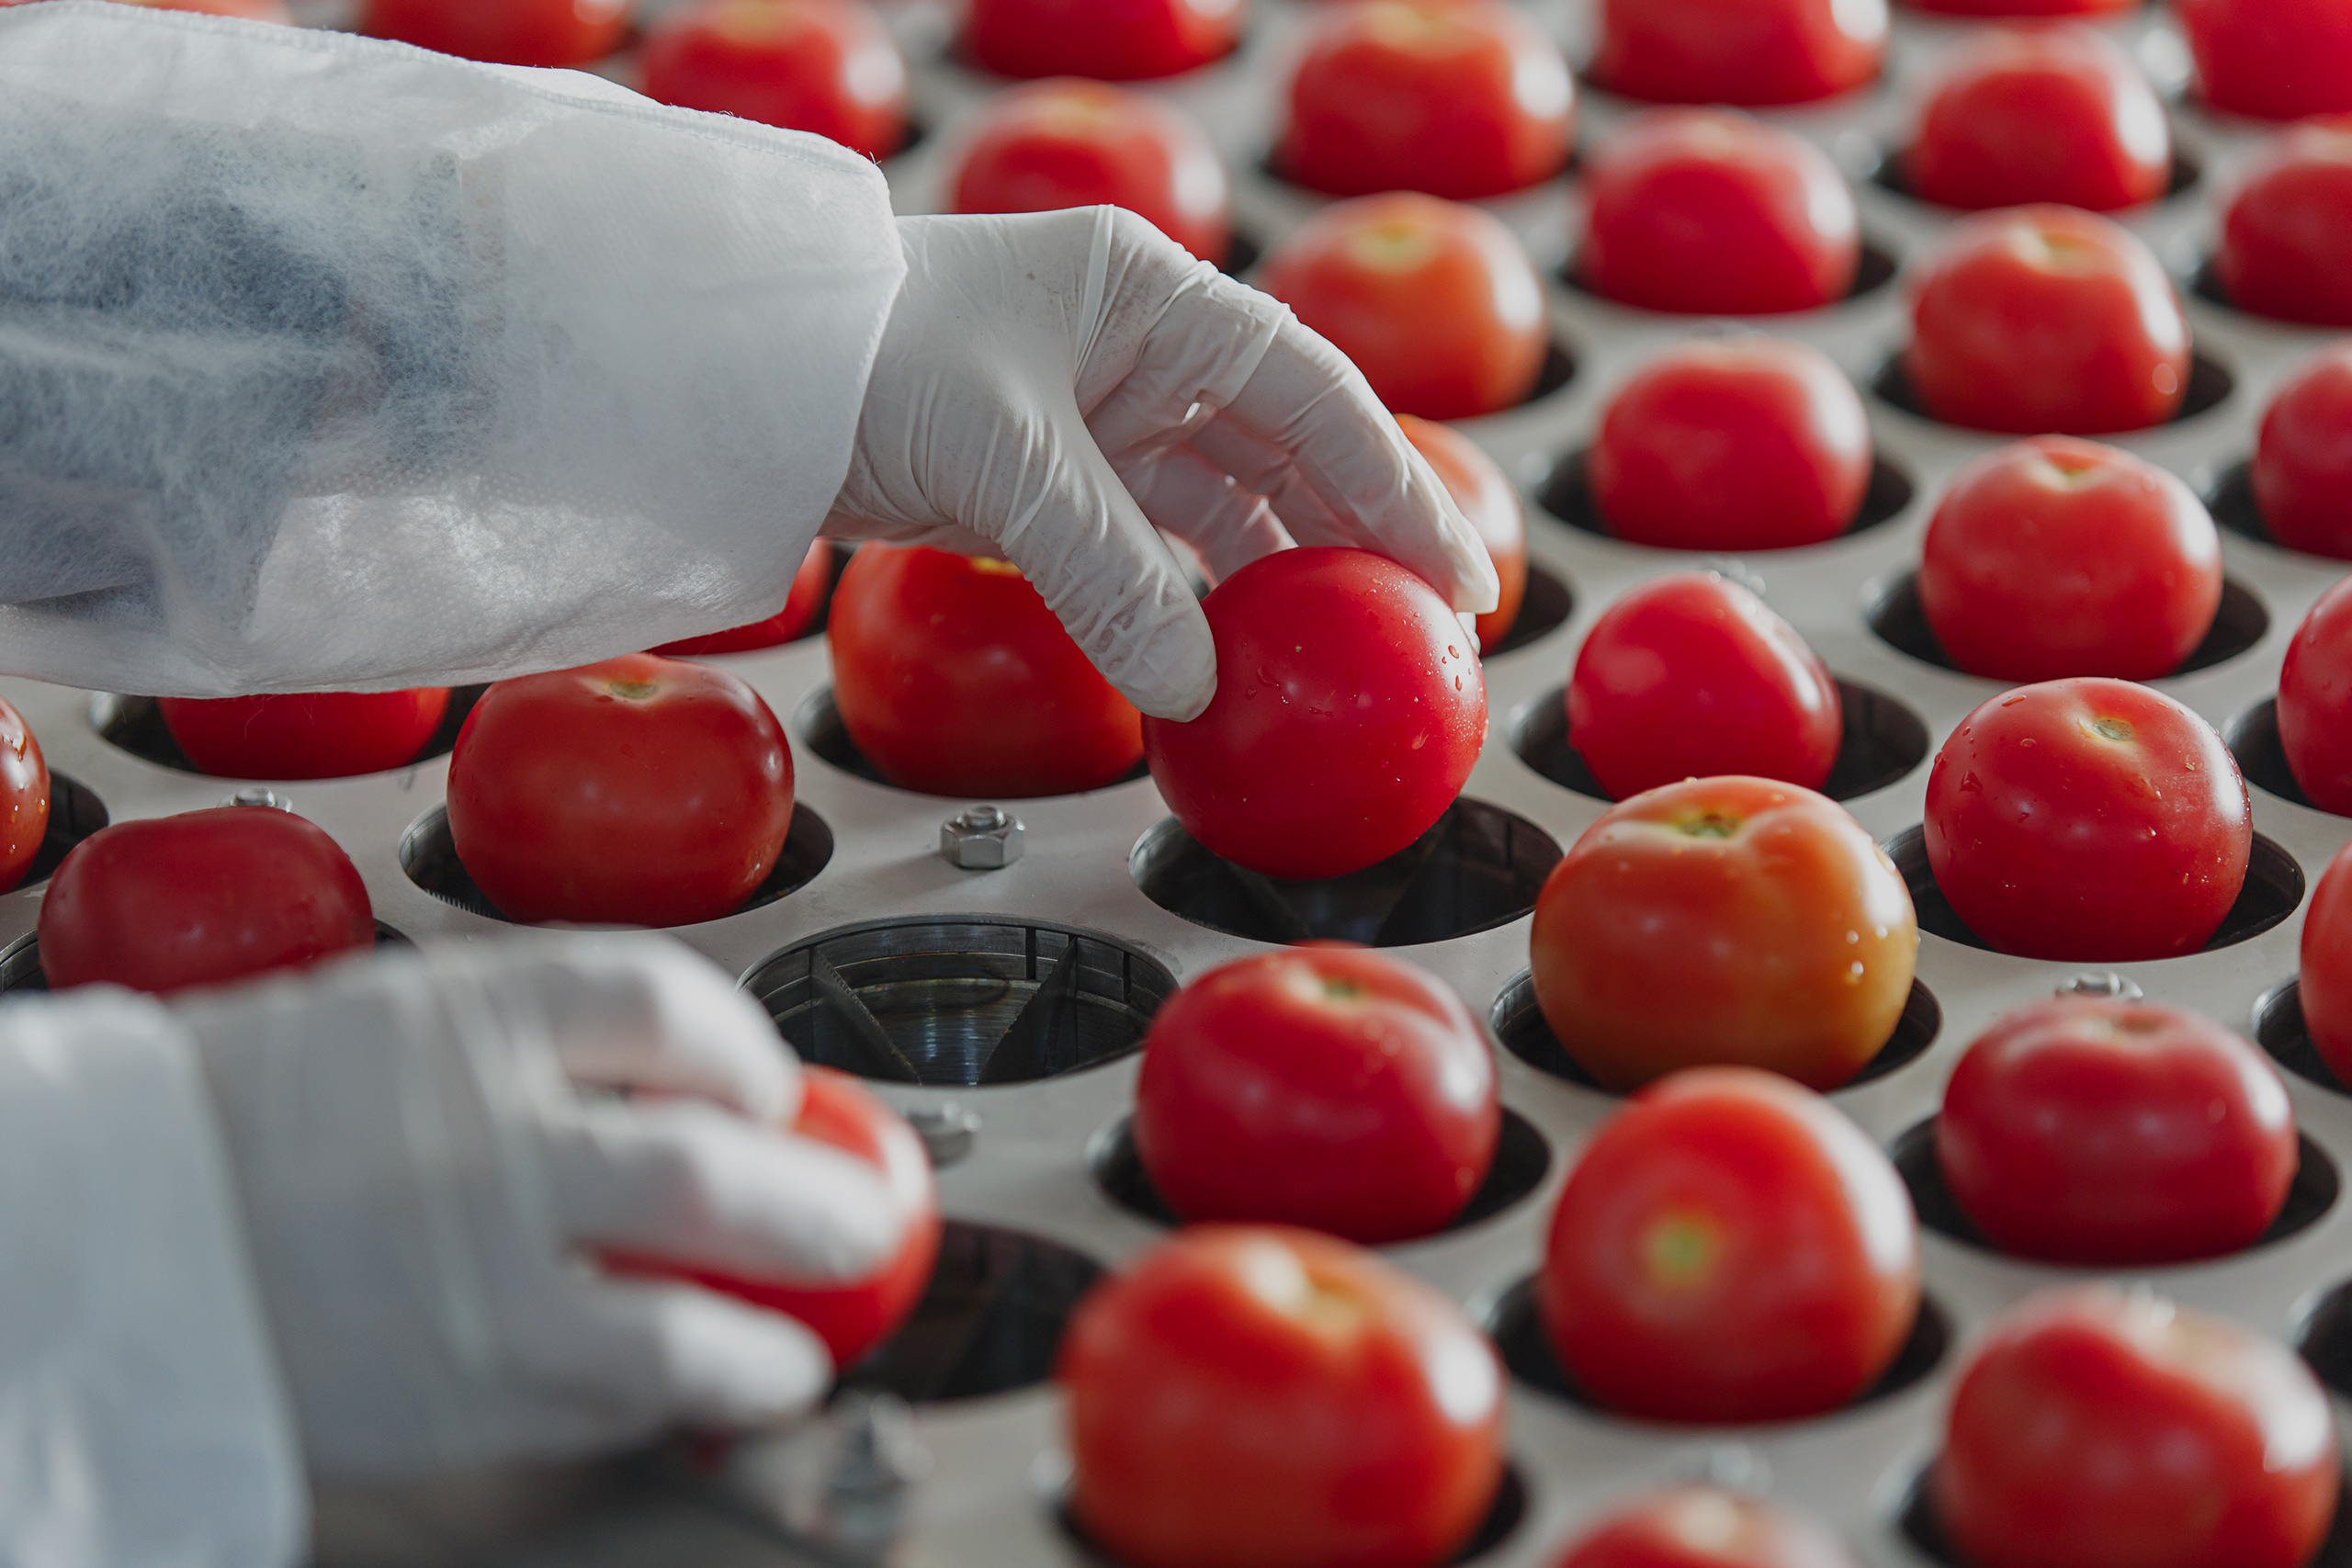 La FDA, el USDA y la EPA crean una nueva plataforma conjunta para ayudar a regular la biotecnología agrícola